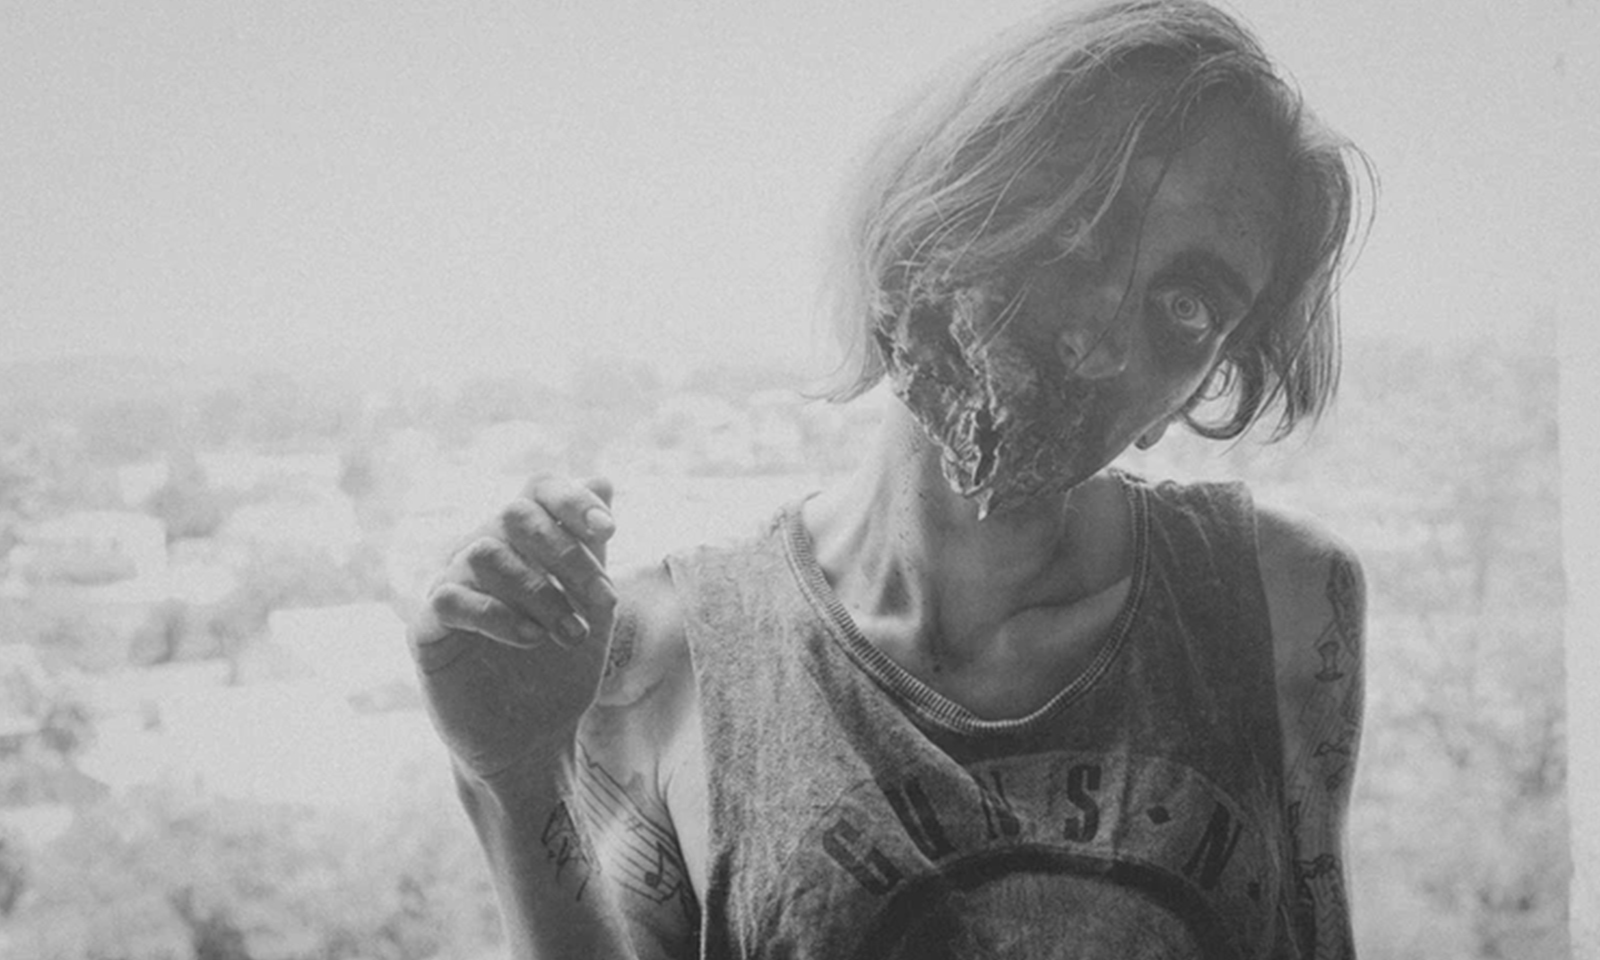 pessoa maquiada de zumbi representando The Walking Dead em imagem preto e branco